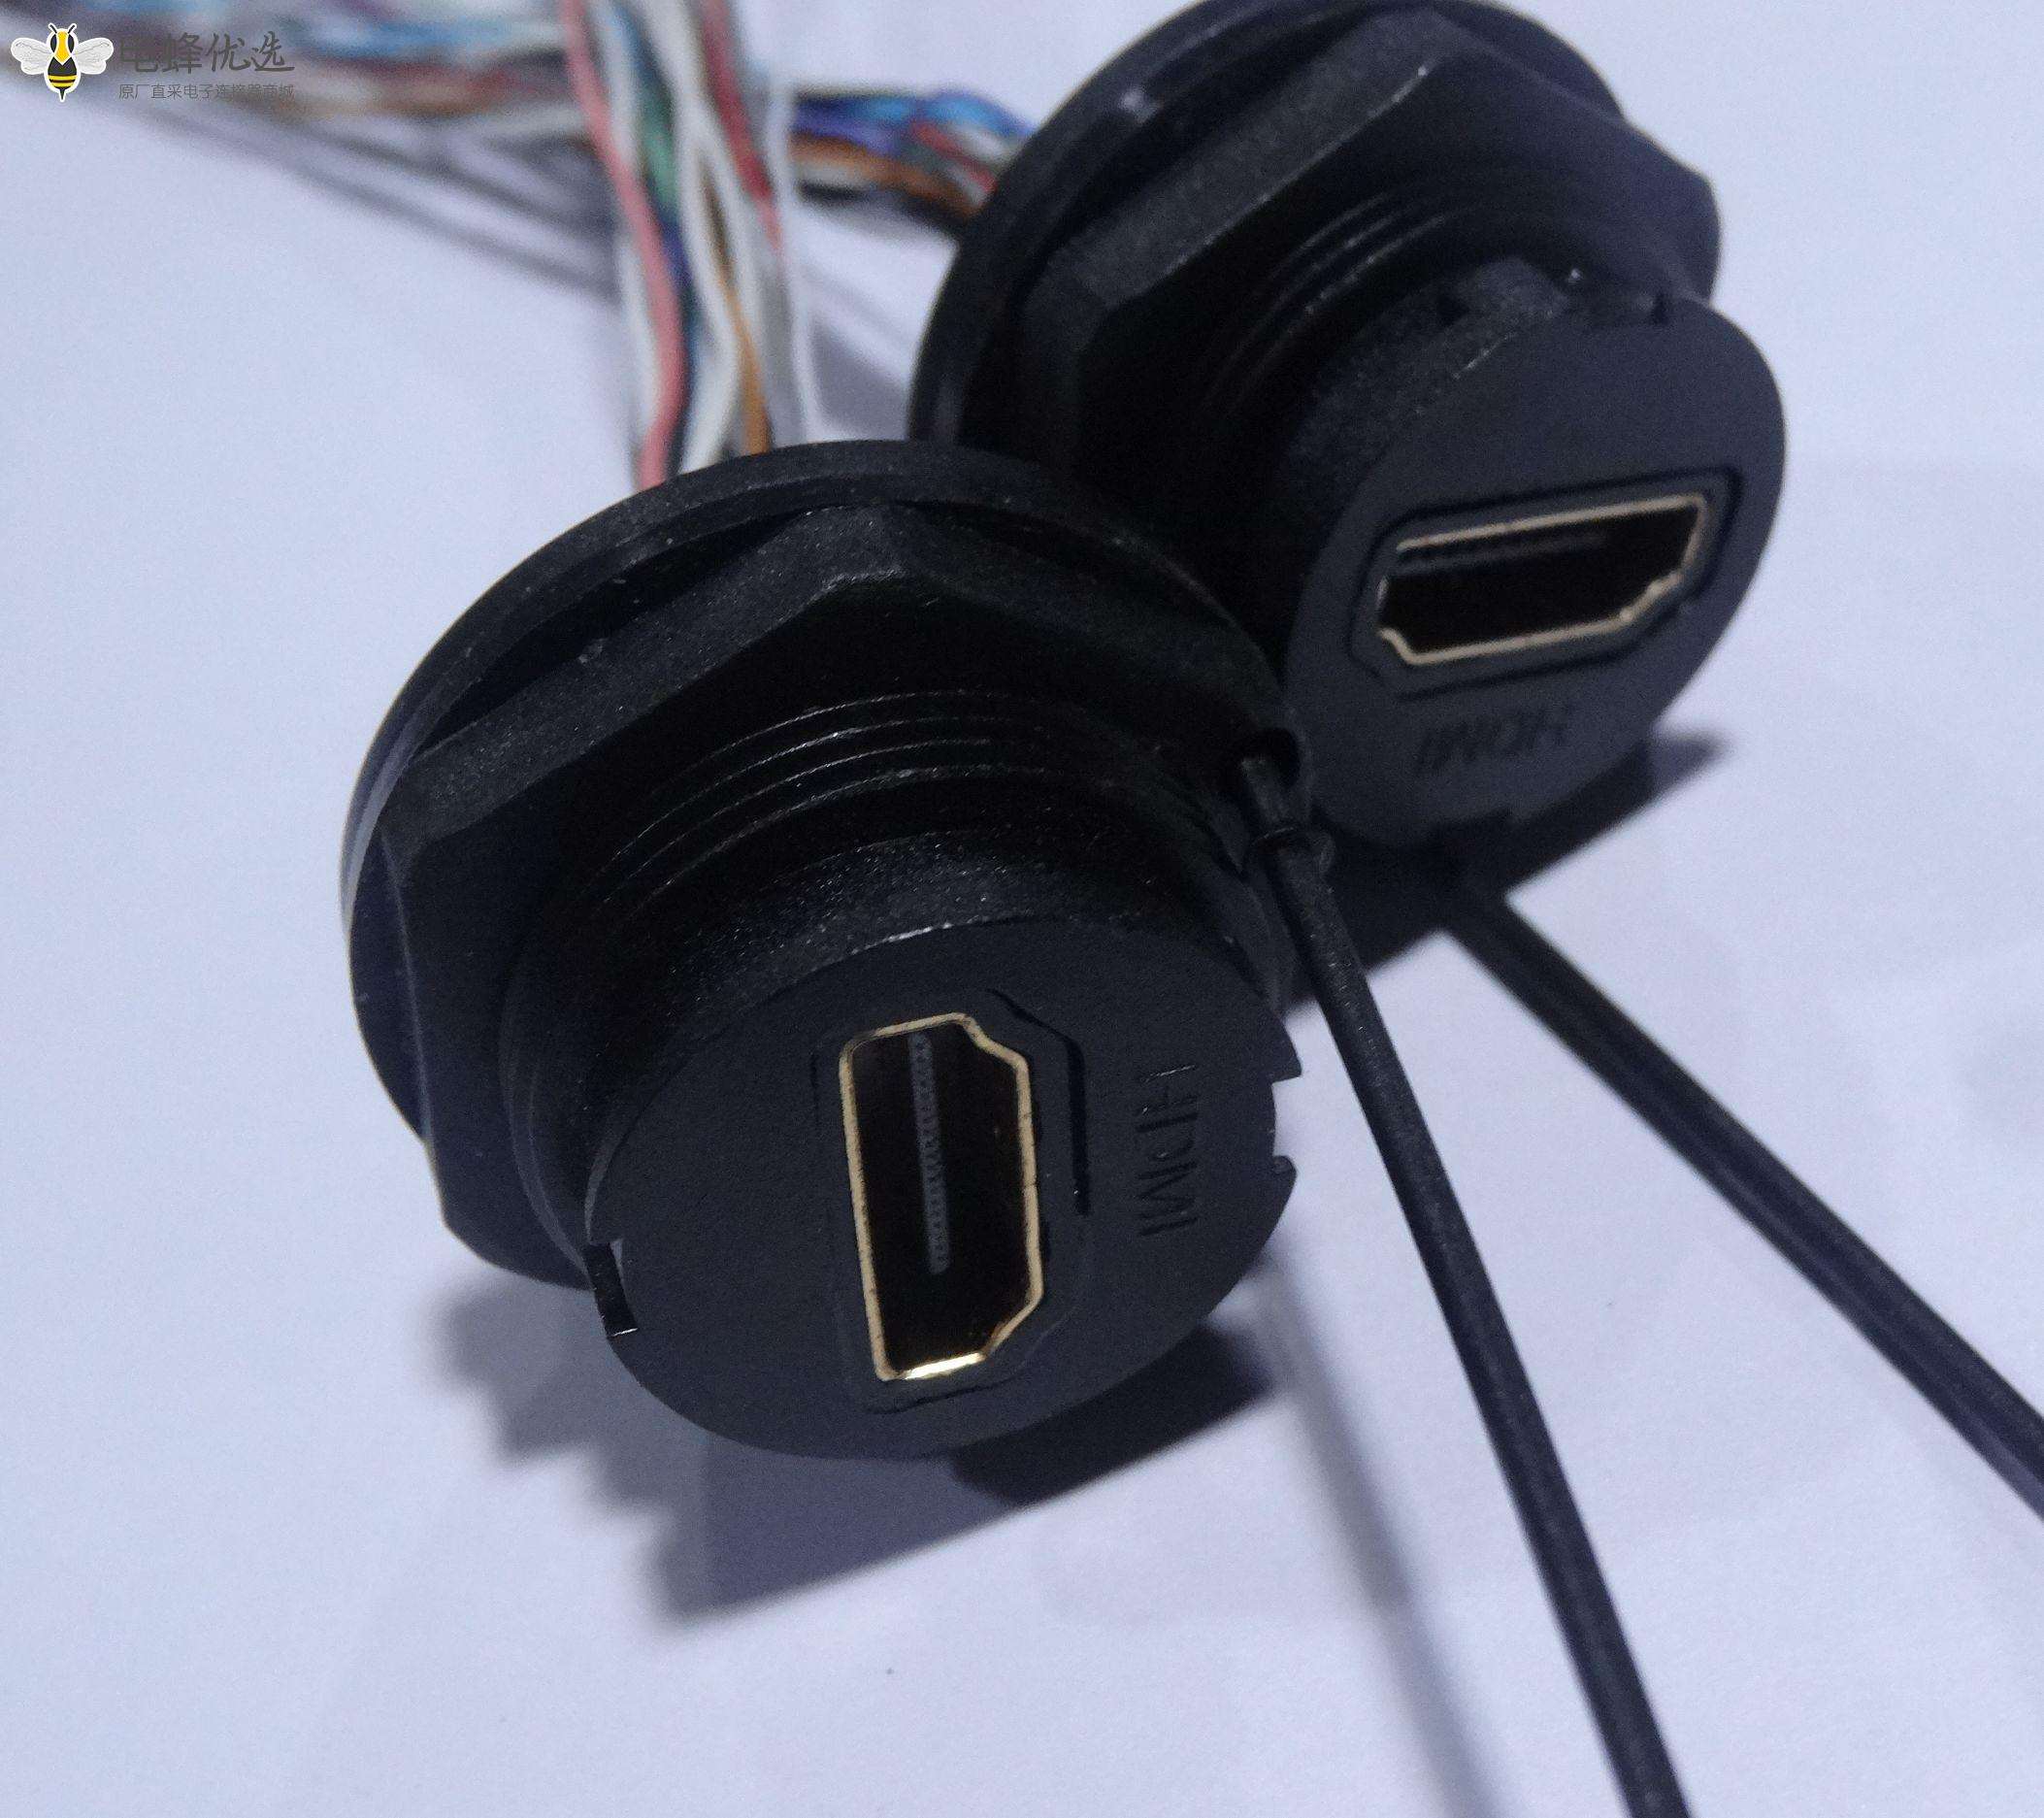 HDMI AF 防前锁M25-1.5 插座连线